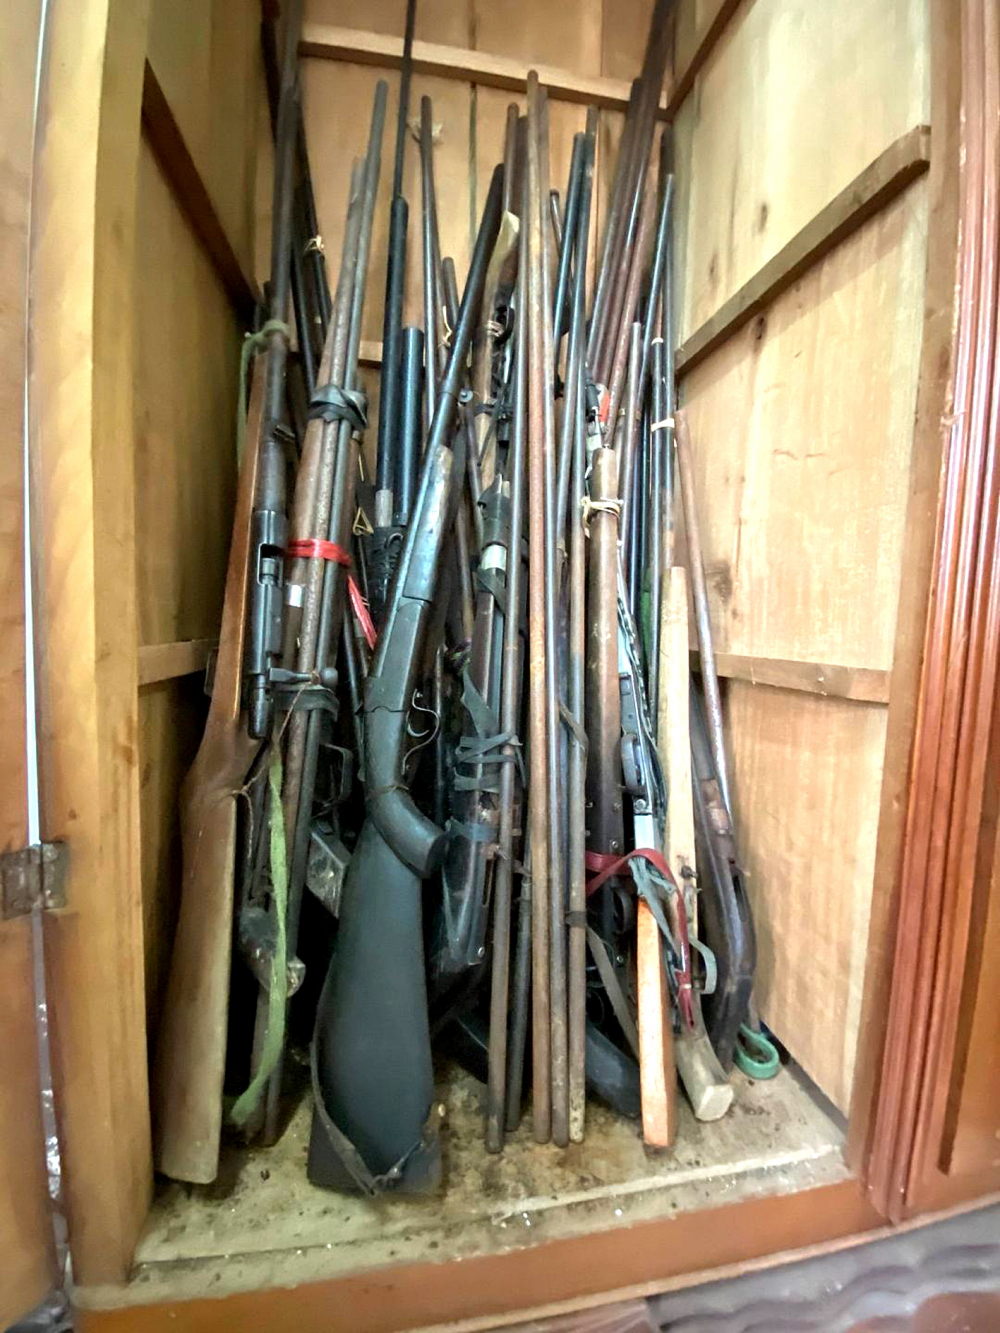 Năm qua, Công an TP.HCM tiếp nhận hàng ngàn vũ khí tự chế do người dân tự nguyện giao nộp